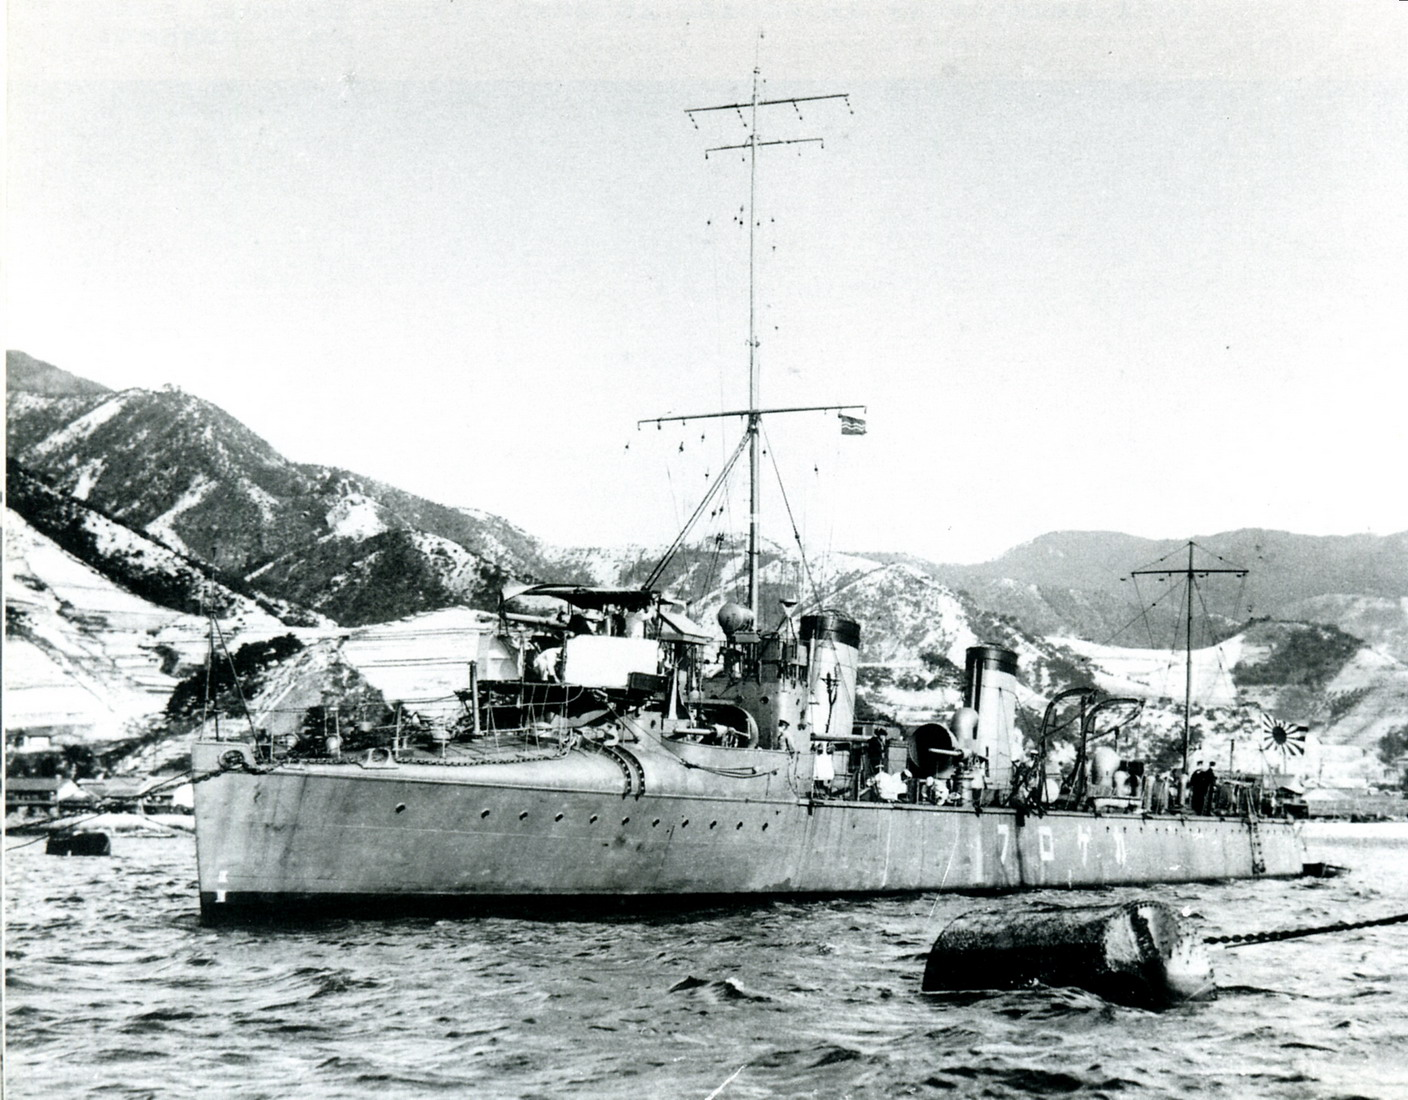 murakumo,英文名:massed clouds)是二战时期日本海军所属的驱逐舰之一